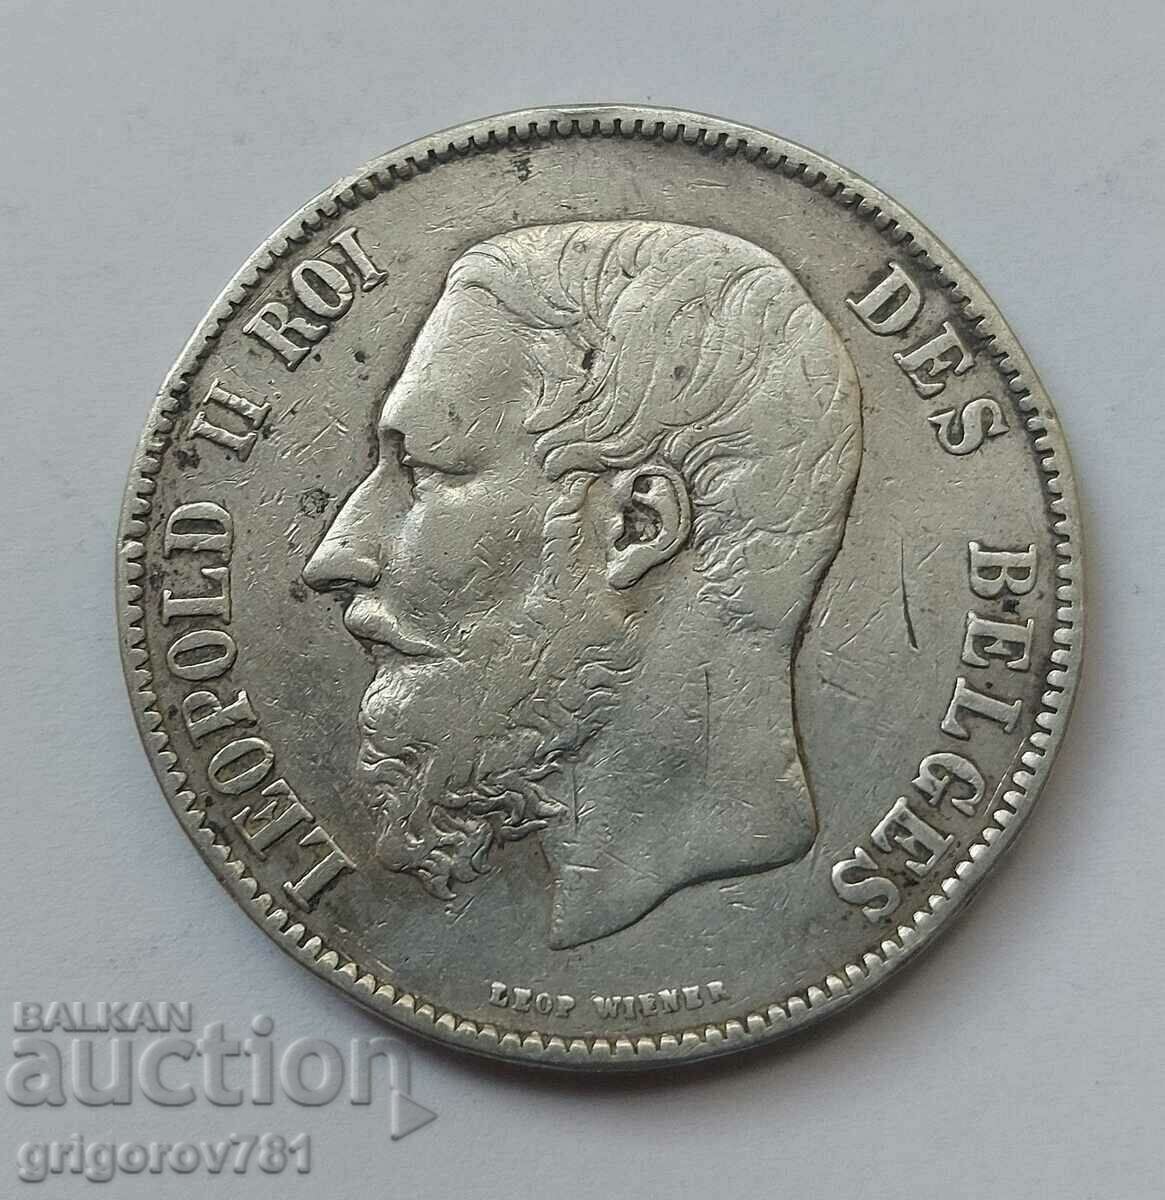 Ασημένιο 5 Φράγκα Βέλγιο 1873 Ασημένιο νόμισμα #174